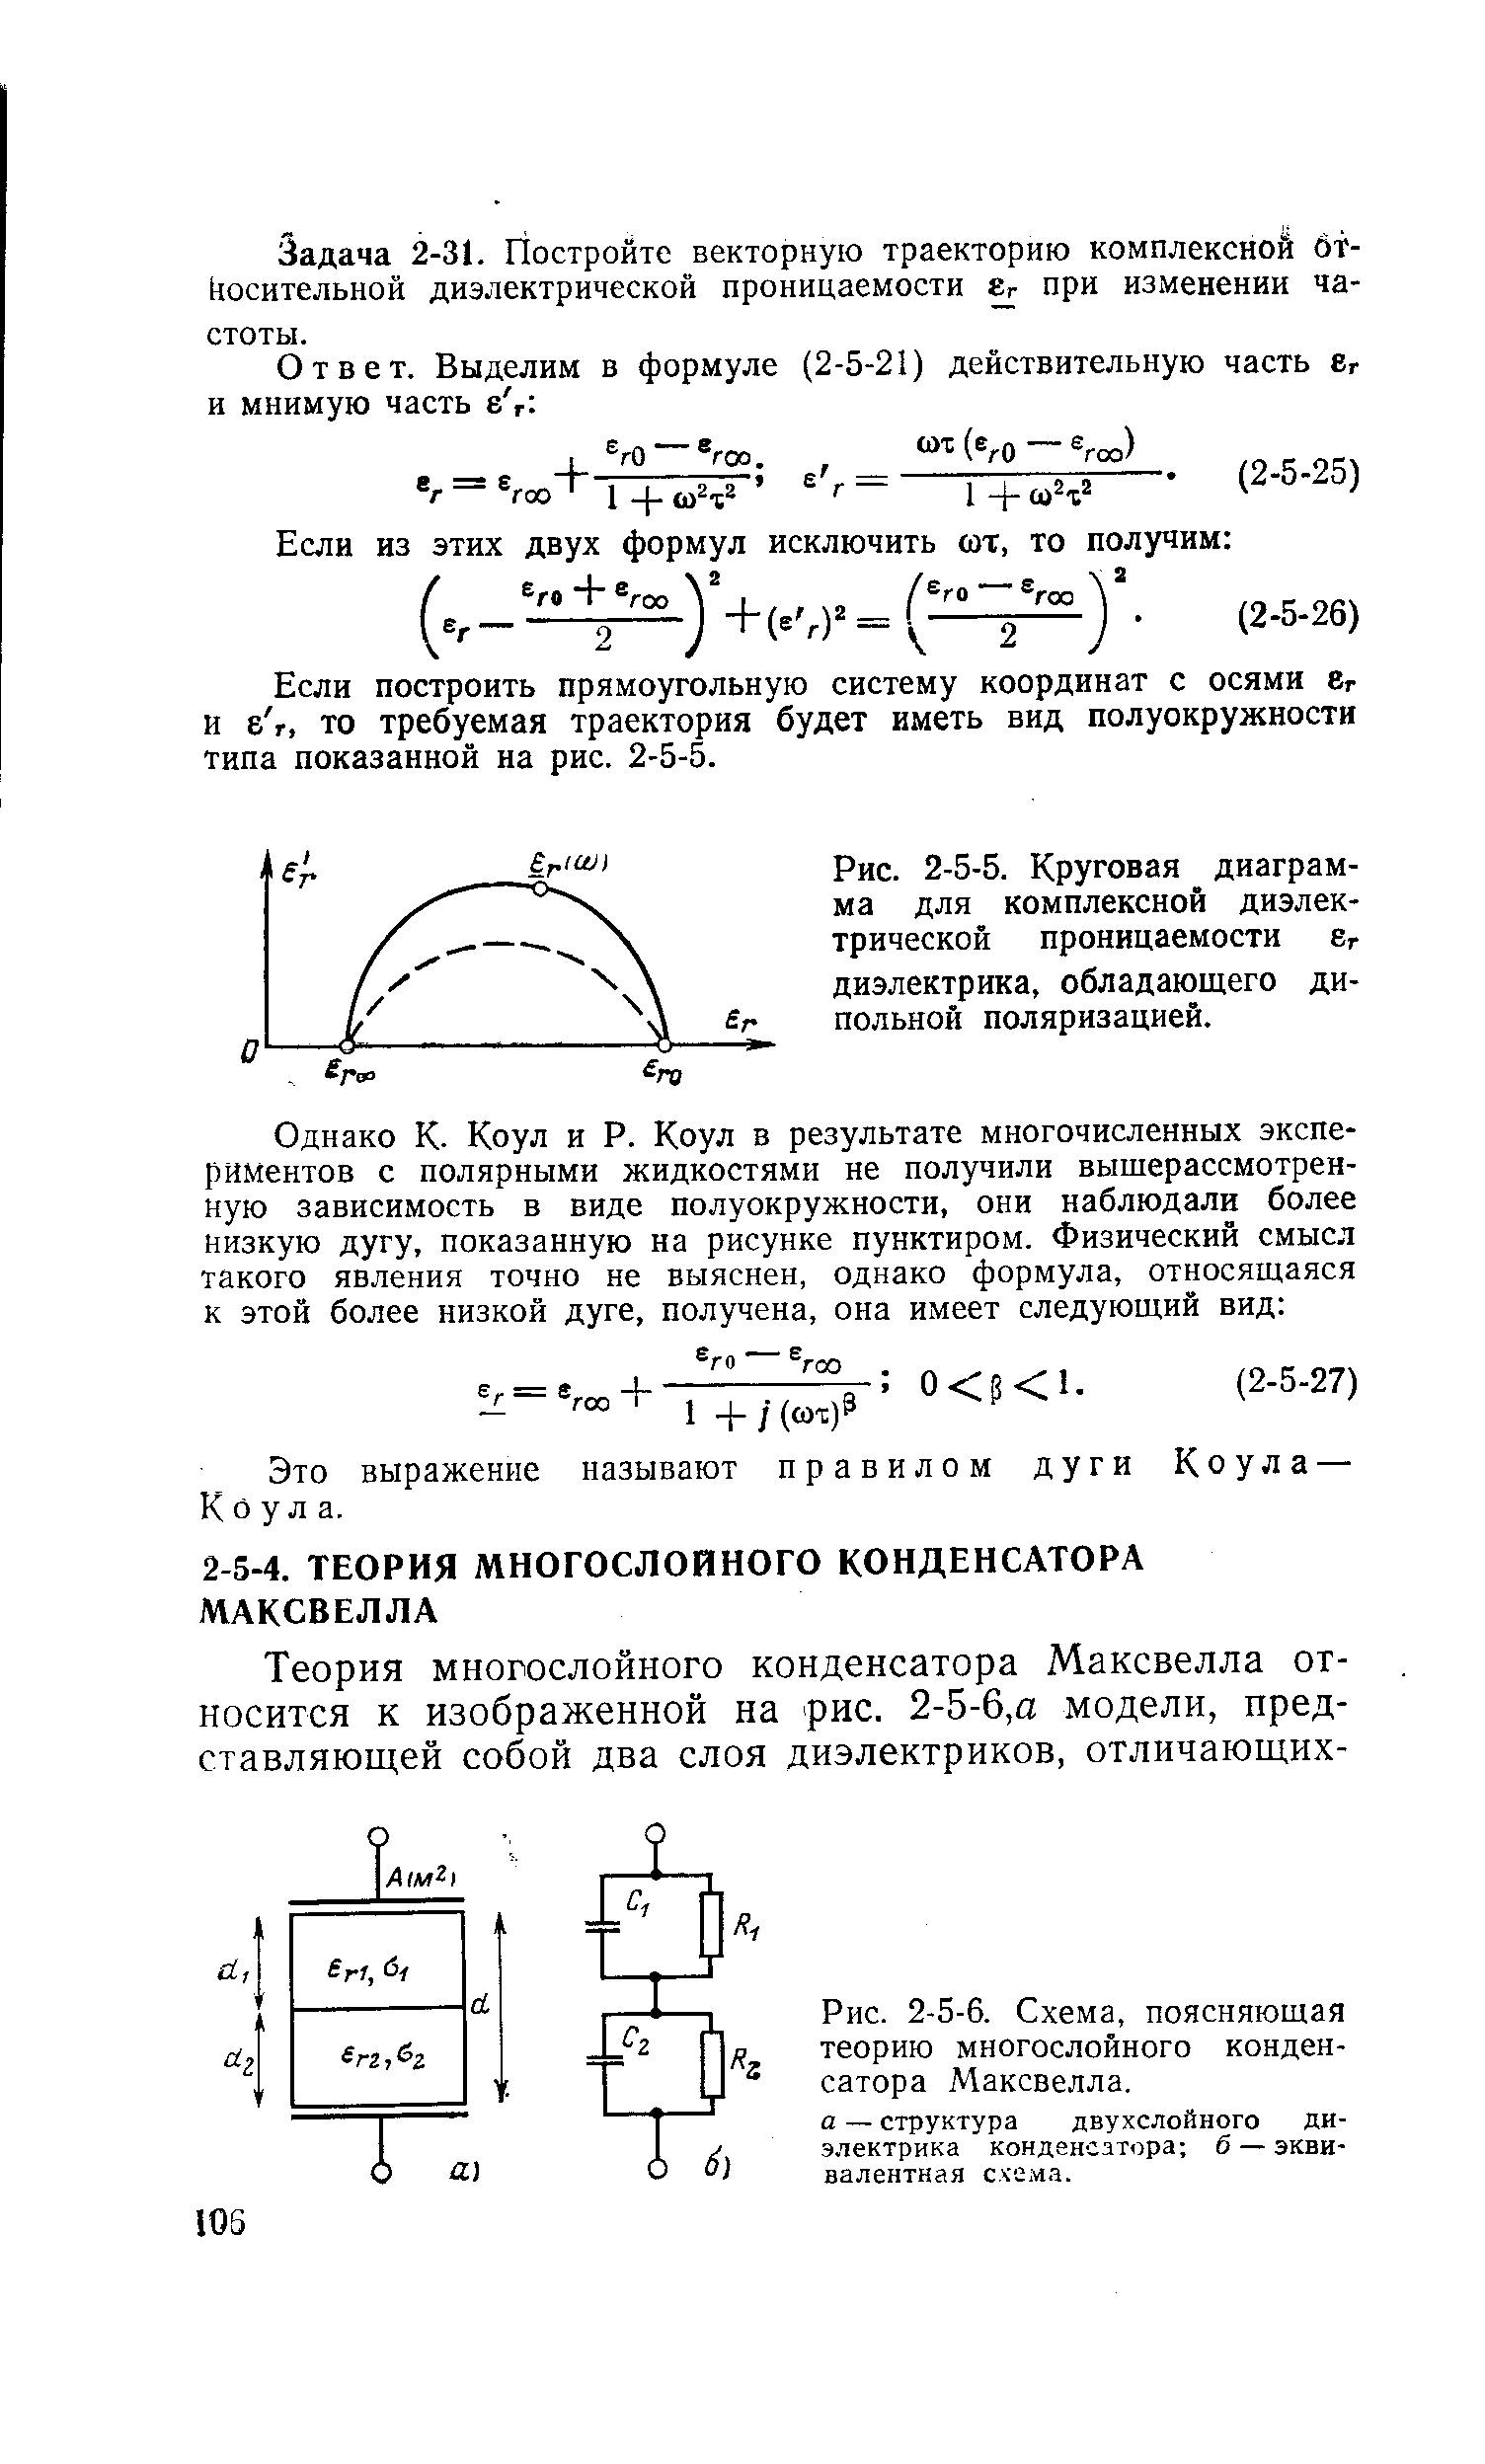 Рис. 2-5-6. Схема, поясняющая теорию многослойного конденсатора Максвелла.
